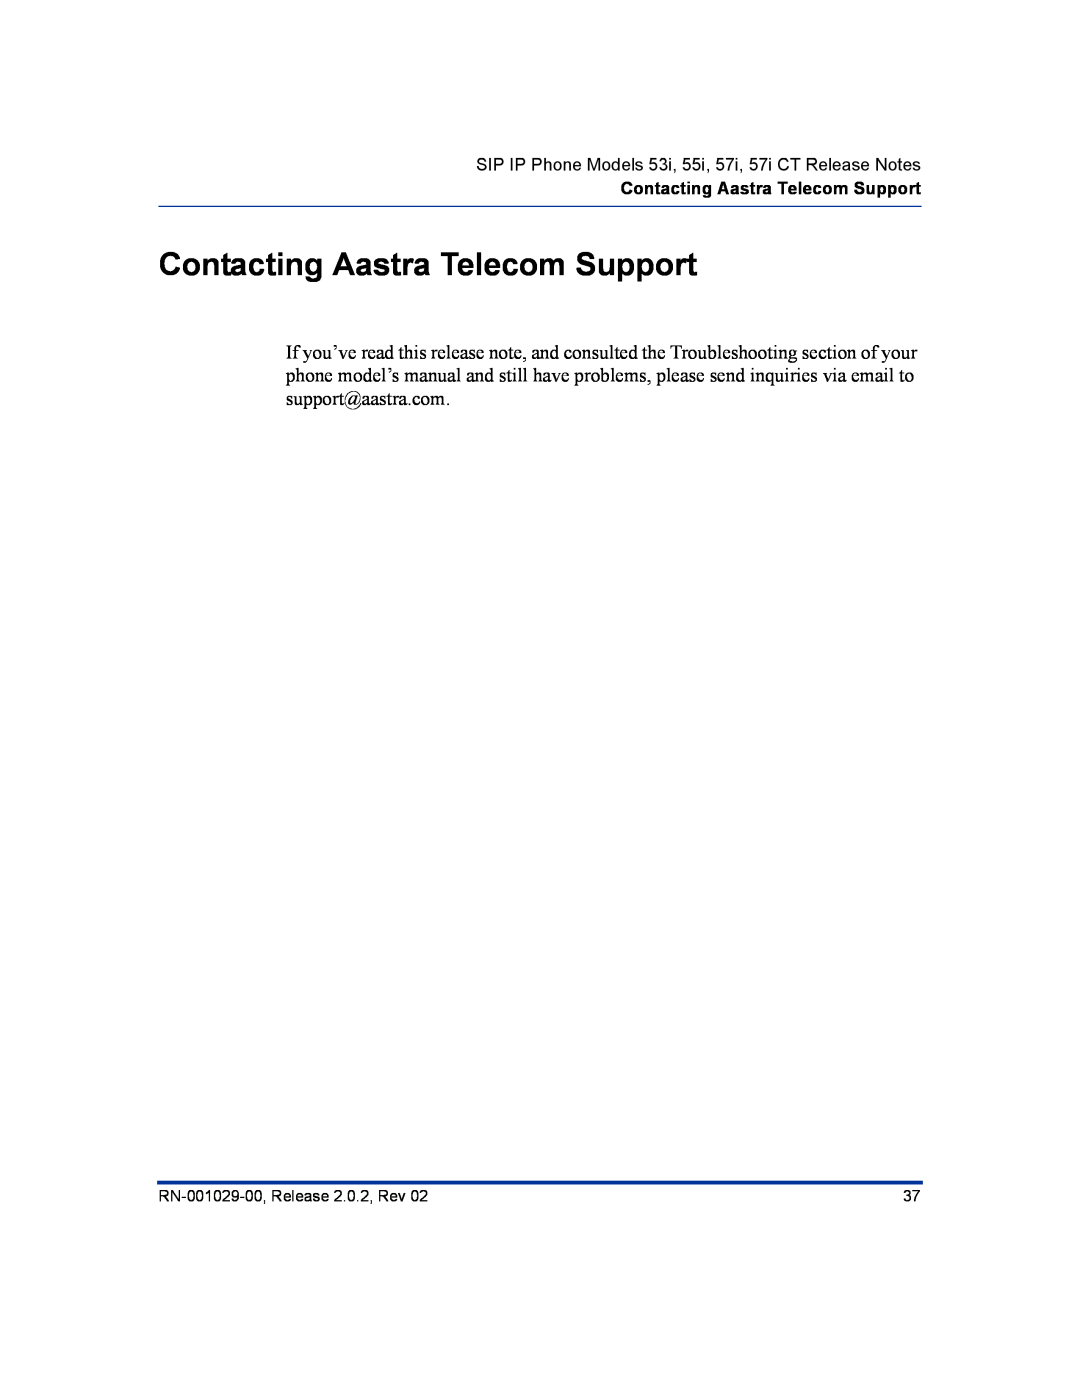 Aastra Telecom 57I CT, 55I Contacting Aastra Telecom Support, SIP IP Phone Models 53i, 55i, 57i, 57i CT Release Notes 